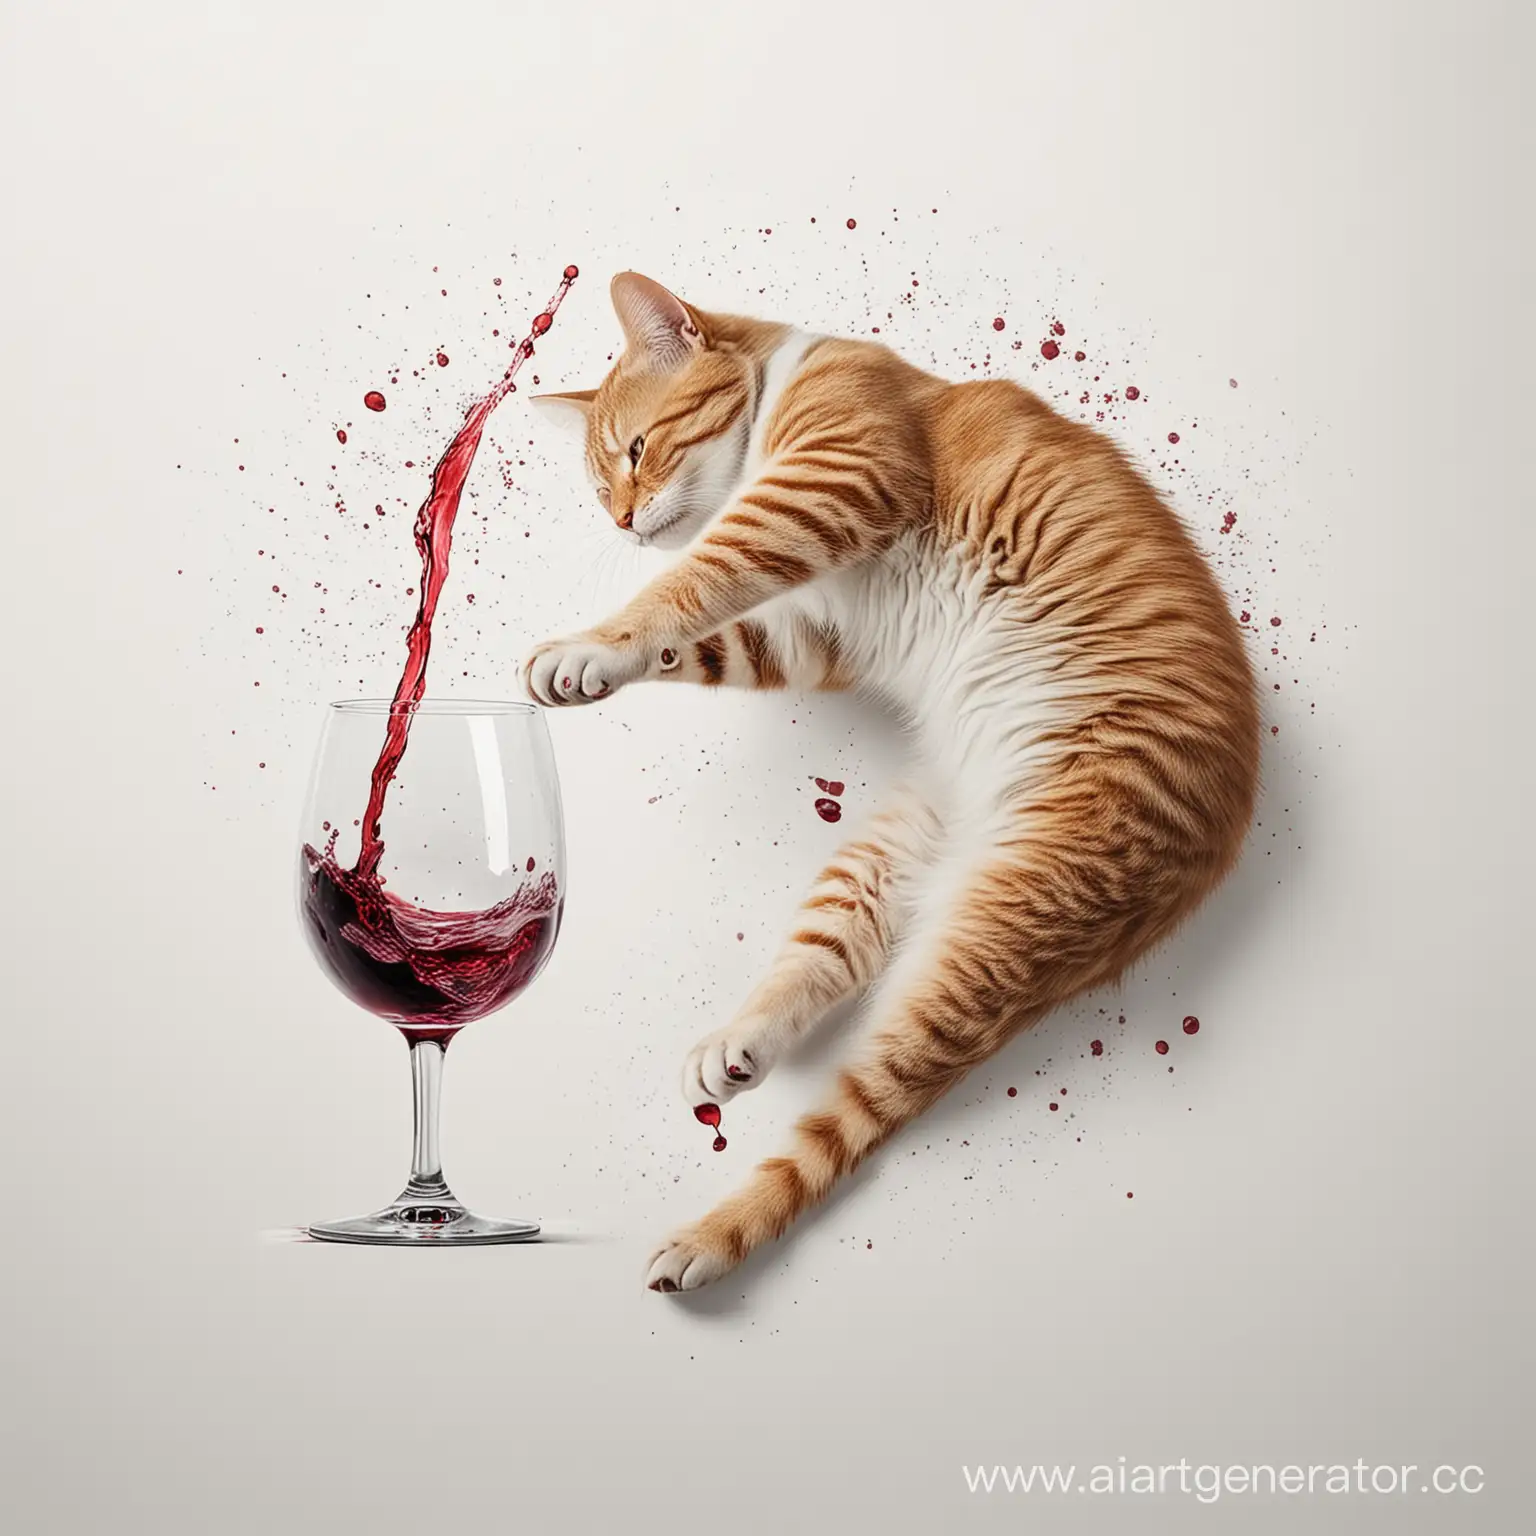 Нарисуй кота, который лапой роняет бокал вина, которое разливается по поверхости на белом фоне. Вид изображения сверху.
